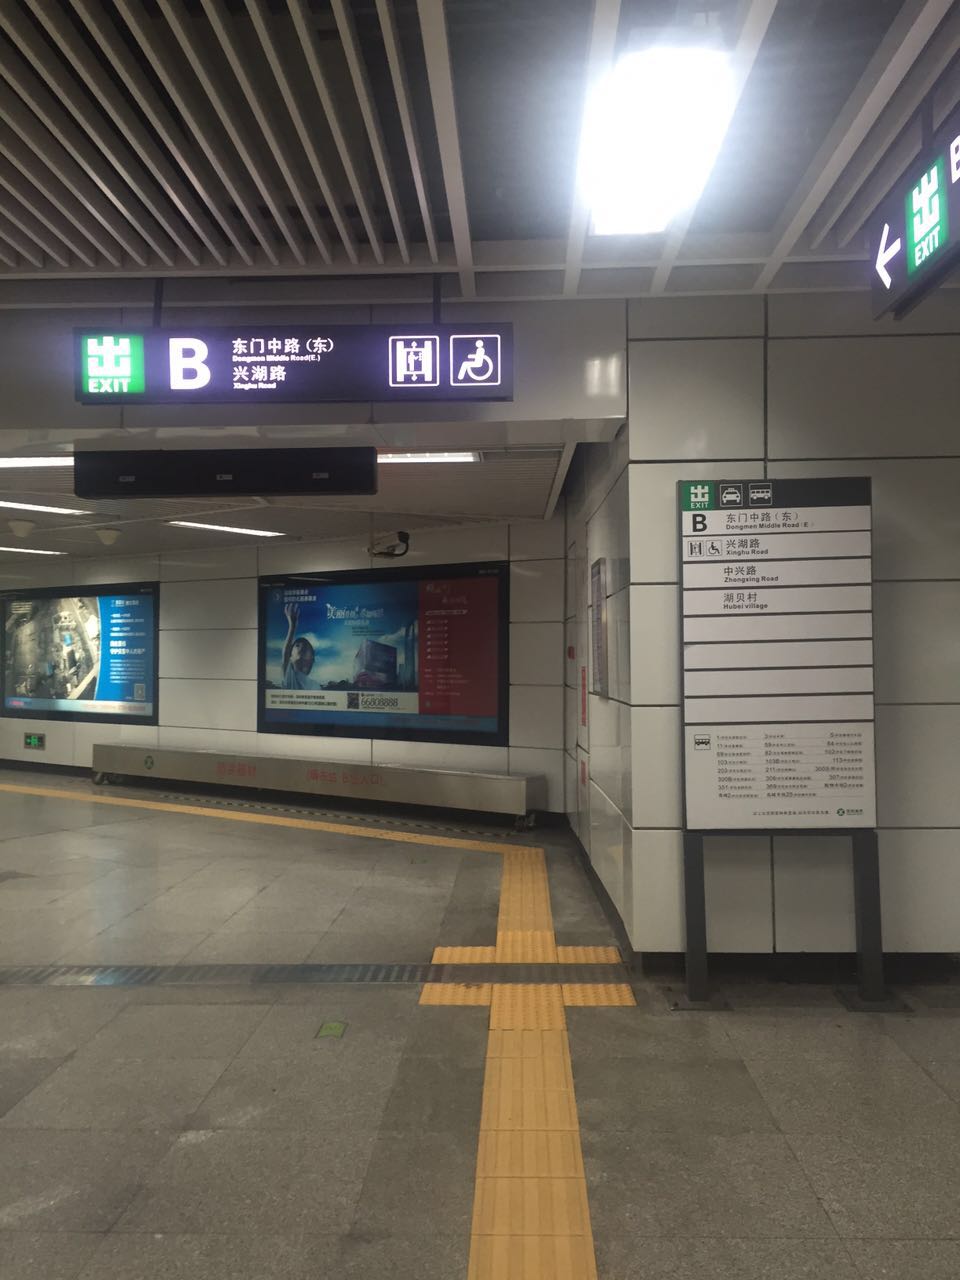 万达丰附近的晒布地铁站b出口,如图所示